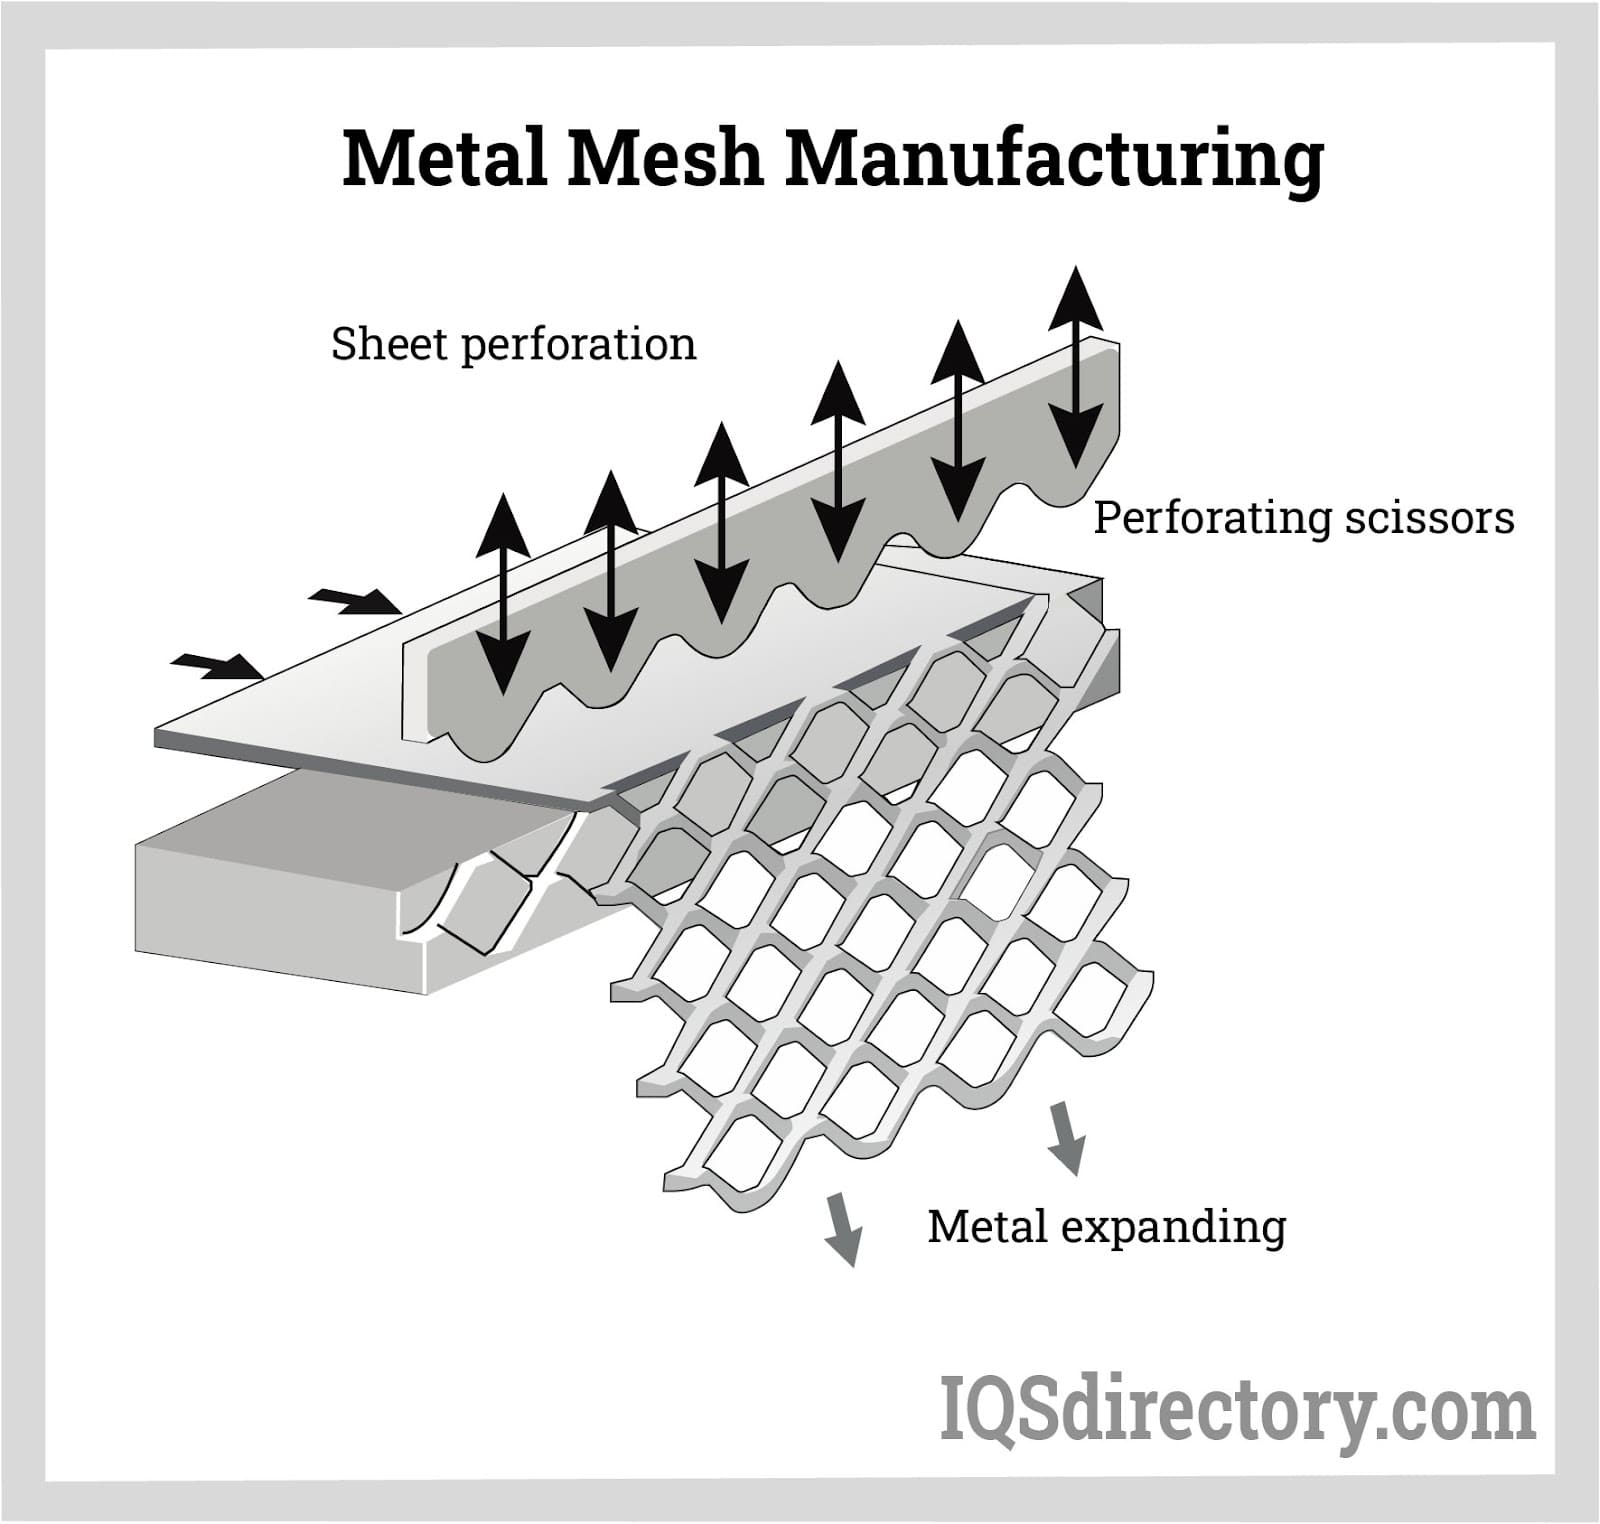 Choosing Between Expanded Metal, Wire Mesh, or Sheet Metal